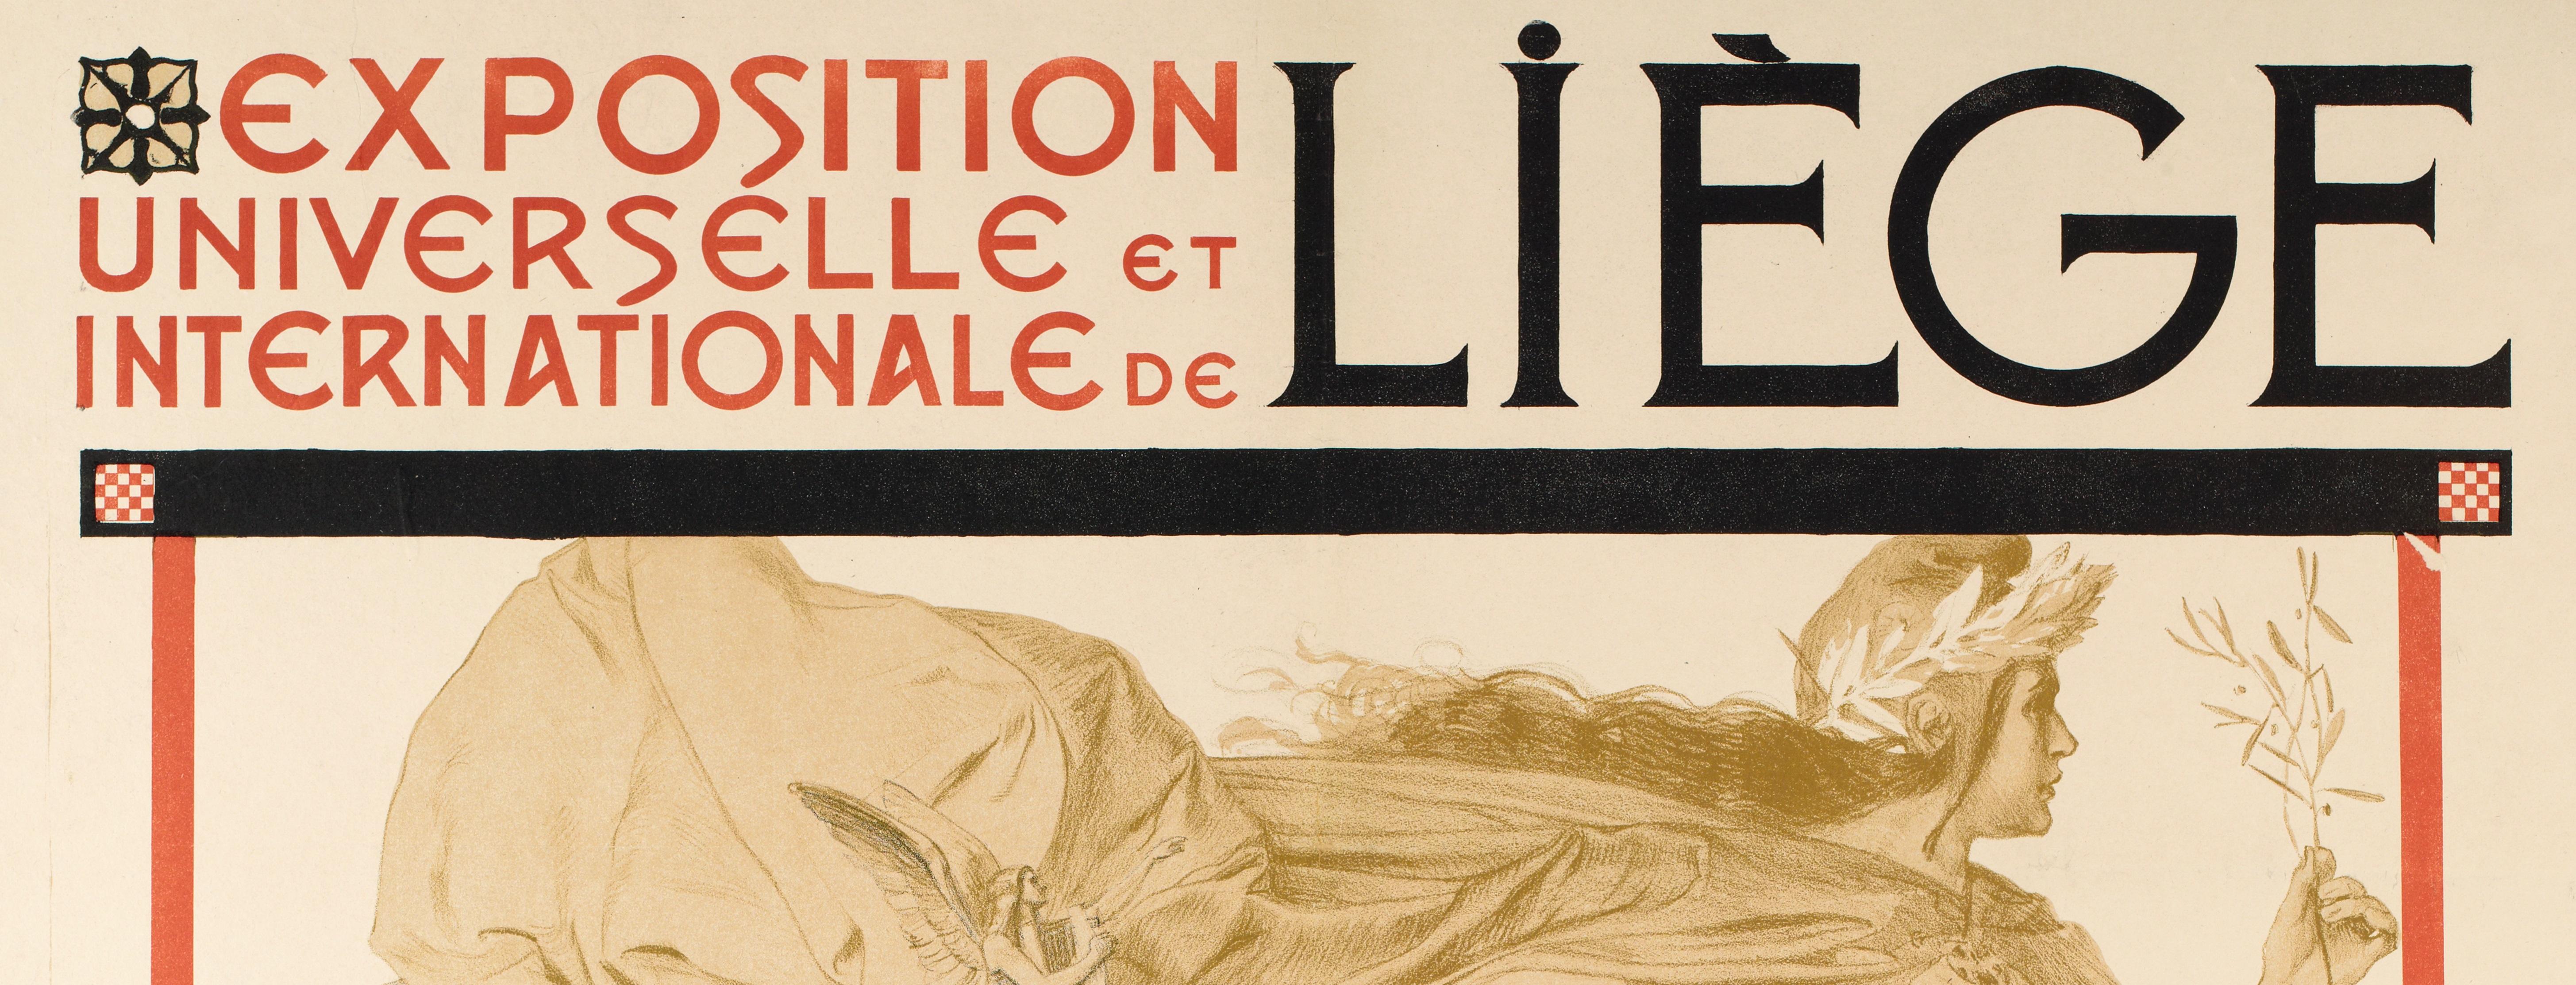 Belle Époque Original Poster-Henri Bellery-Desfontaines-Universal Expo Liège, 1905 For Sale